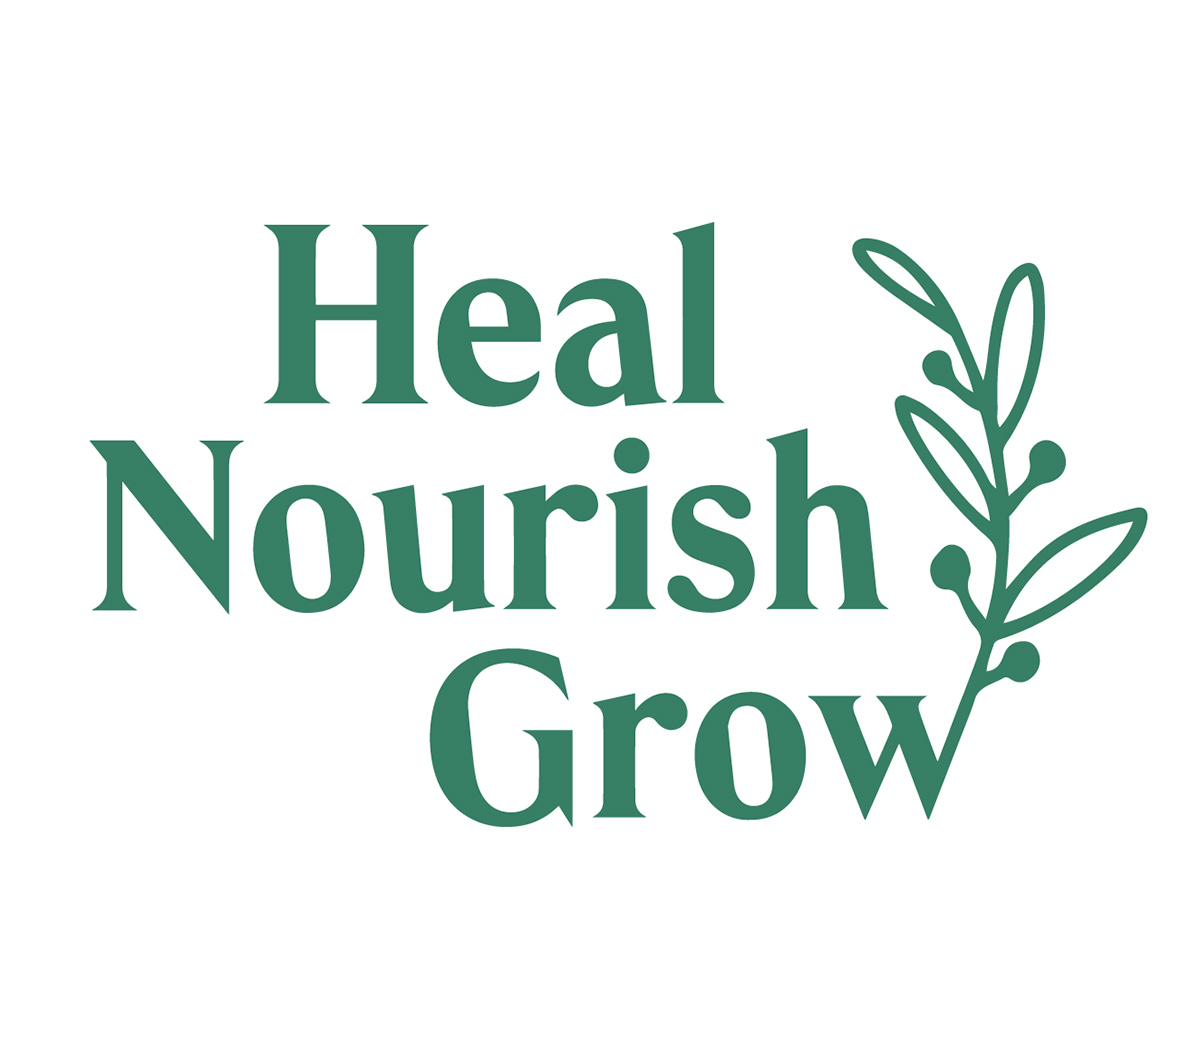 Heal Nourish Grow  for Mushroom Coffee